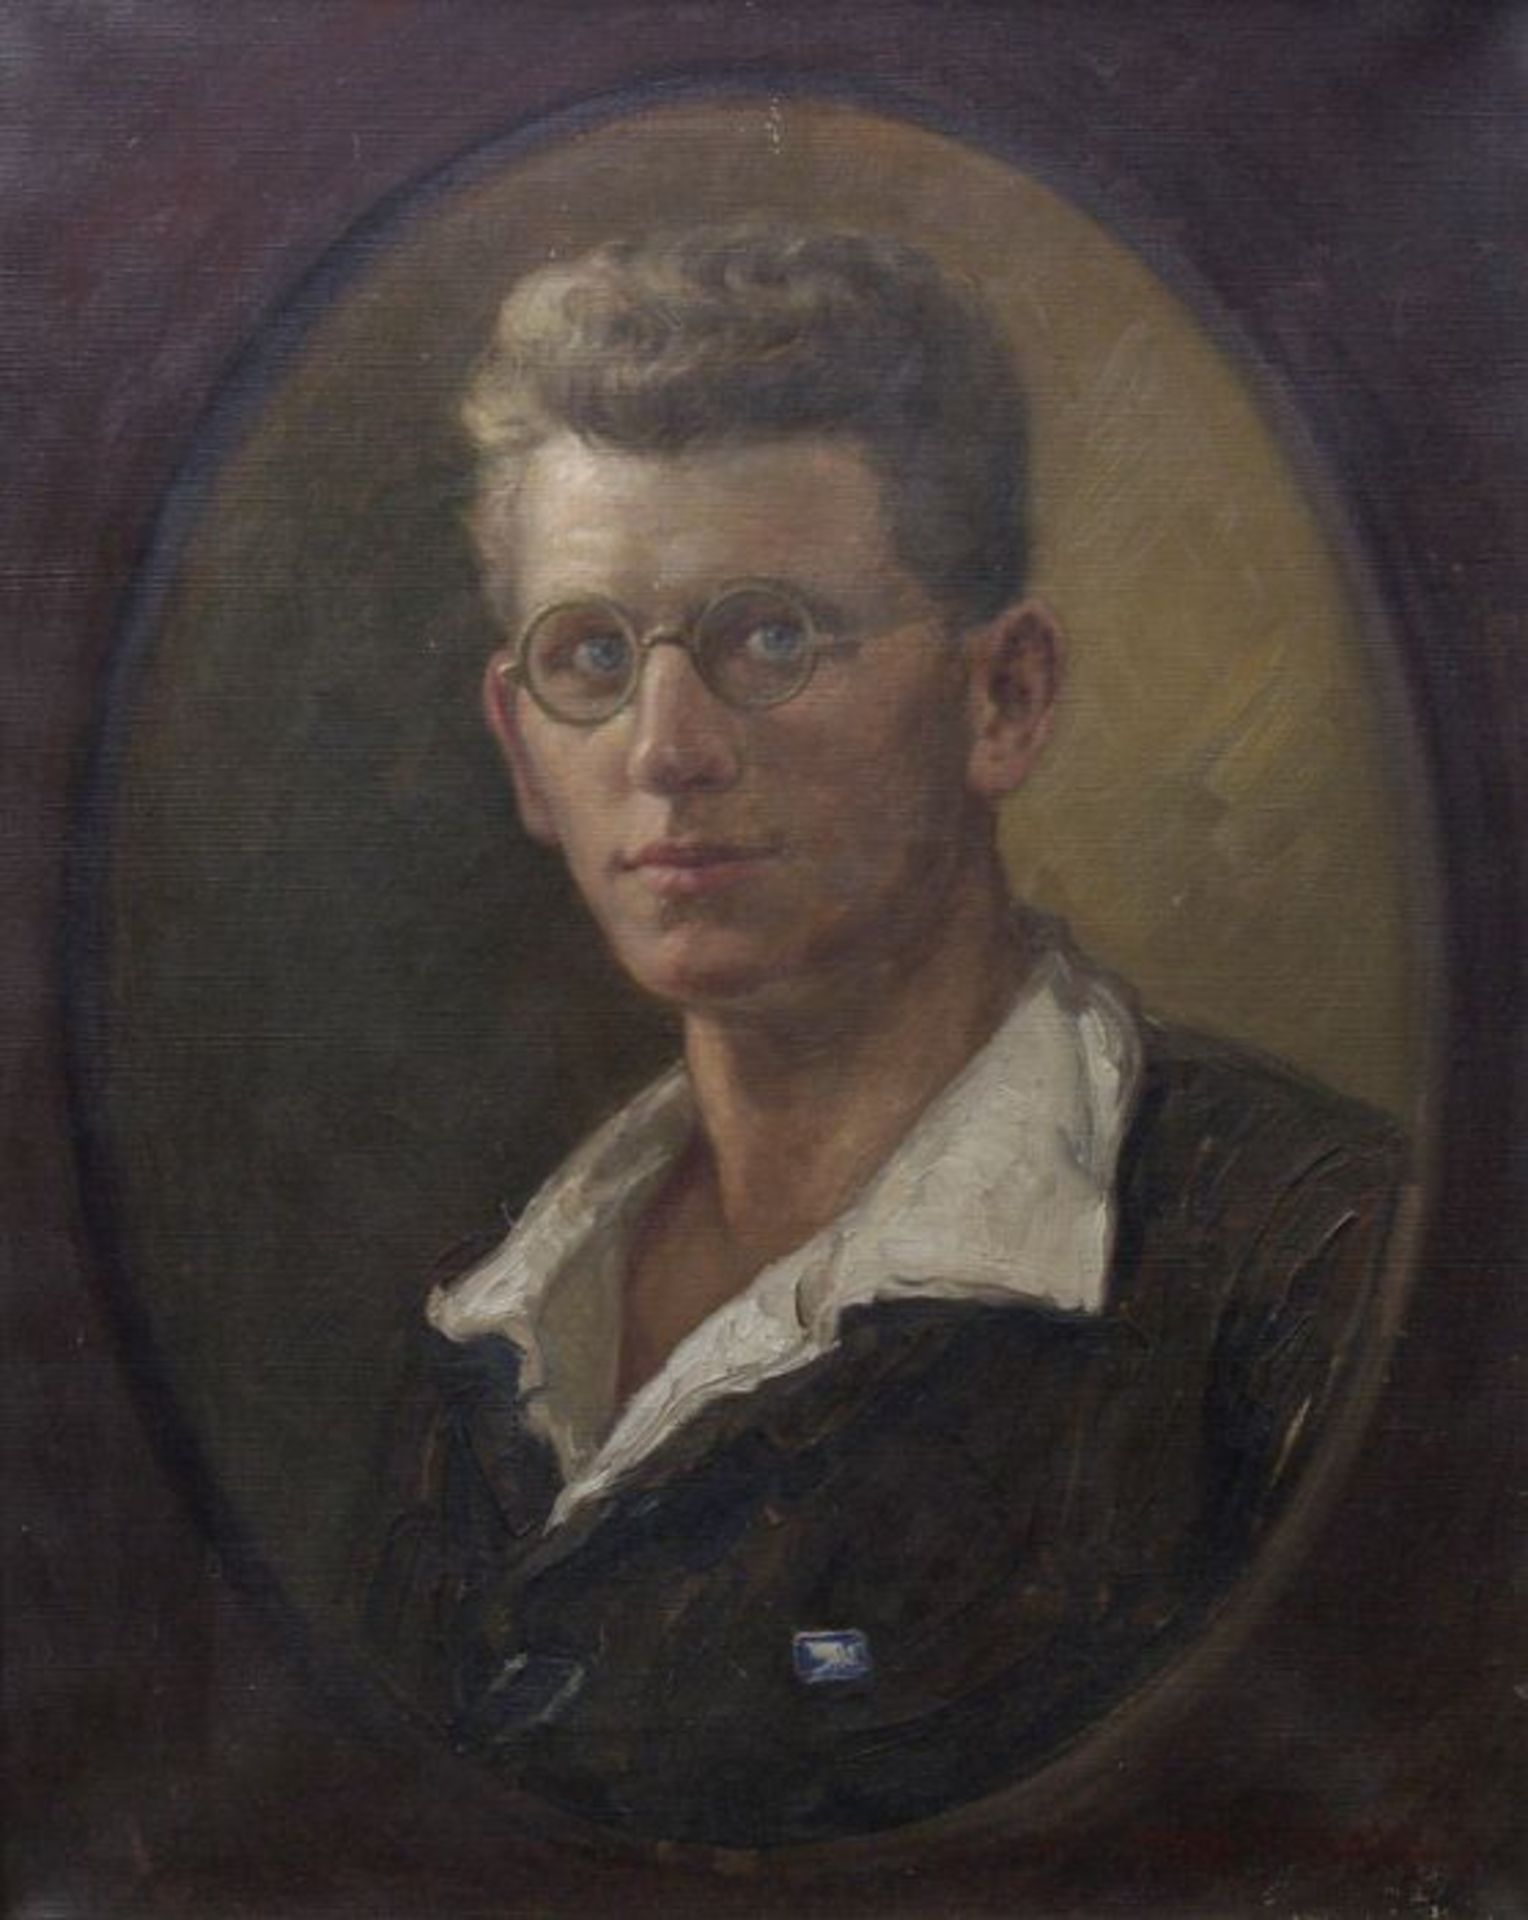 Karl WahlPorträt eines jungen Soldaten in Zivil, Öl auf Leinwand, um 1918, rückw. bez. "Arnold